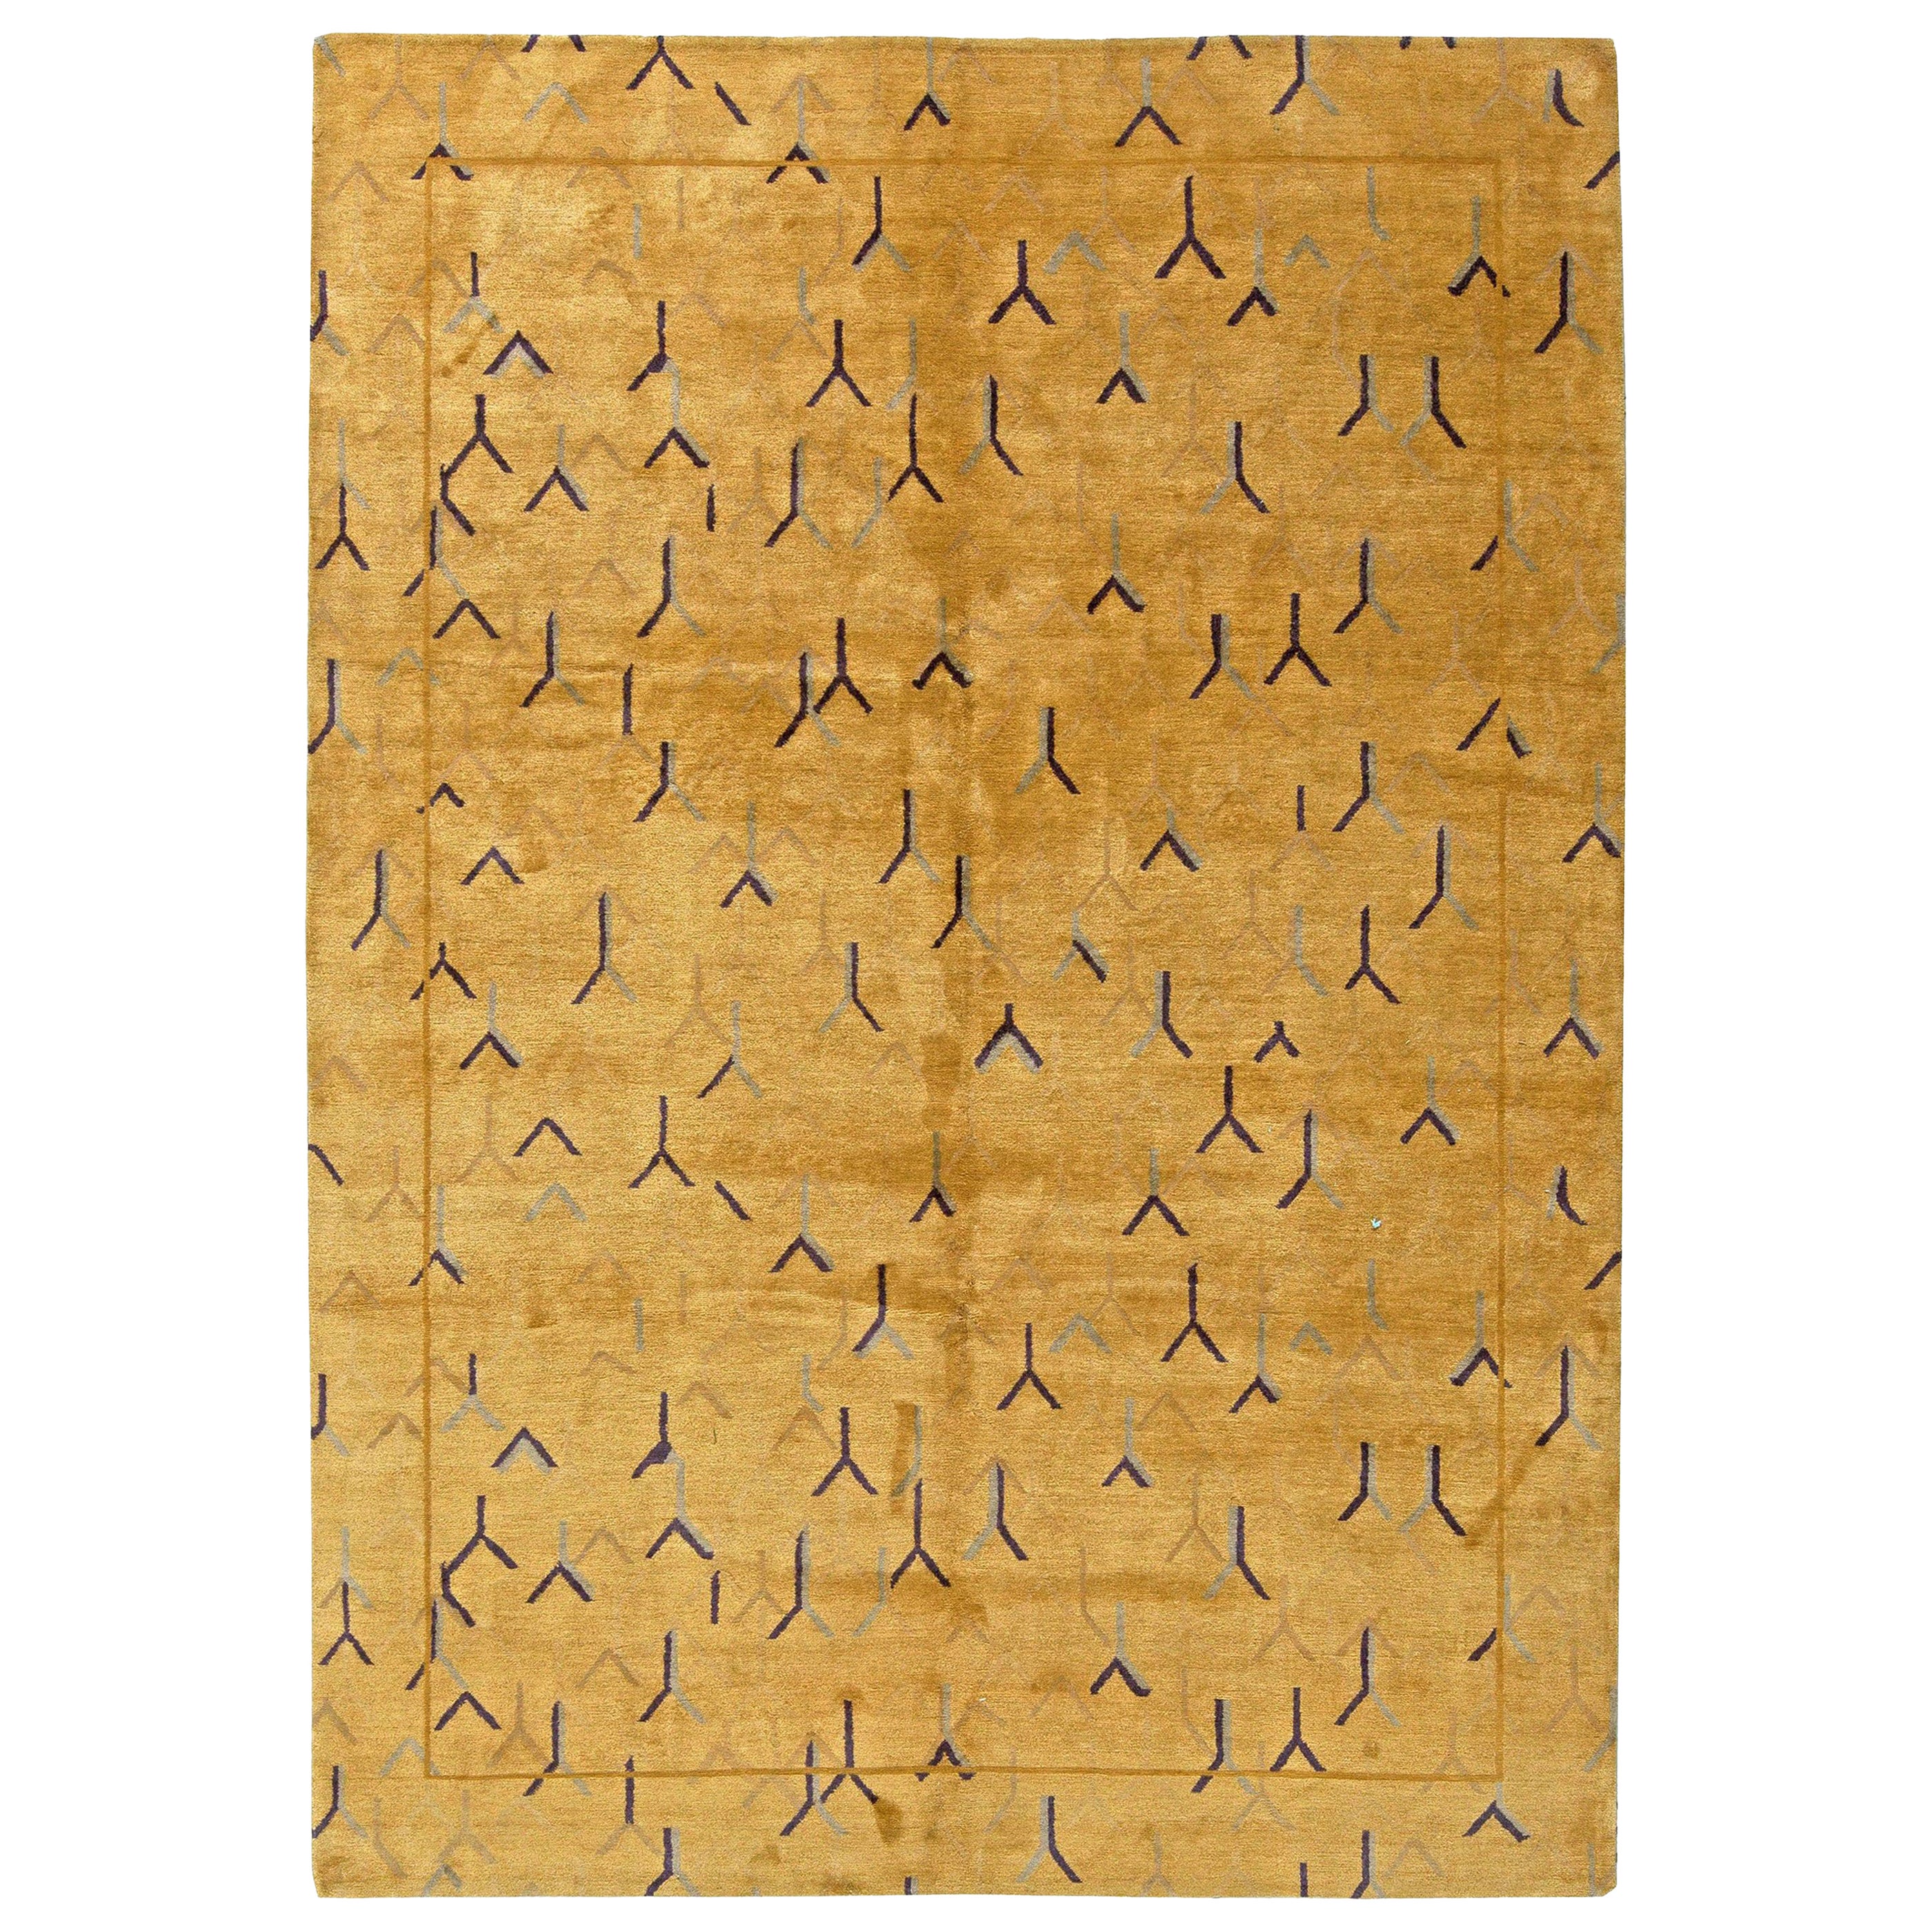 Moderner tibetisch-goldener und gelber handgefertigter Teppich aus Wolle und Seide von Doris Leslie Blau